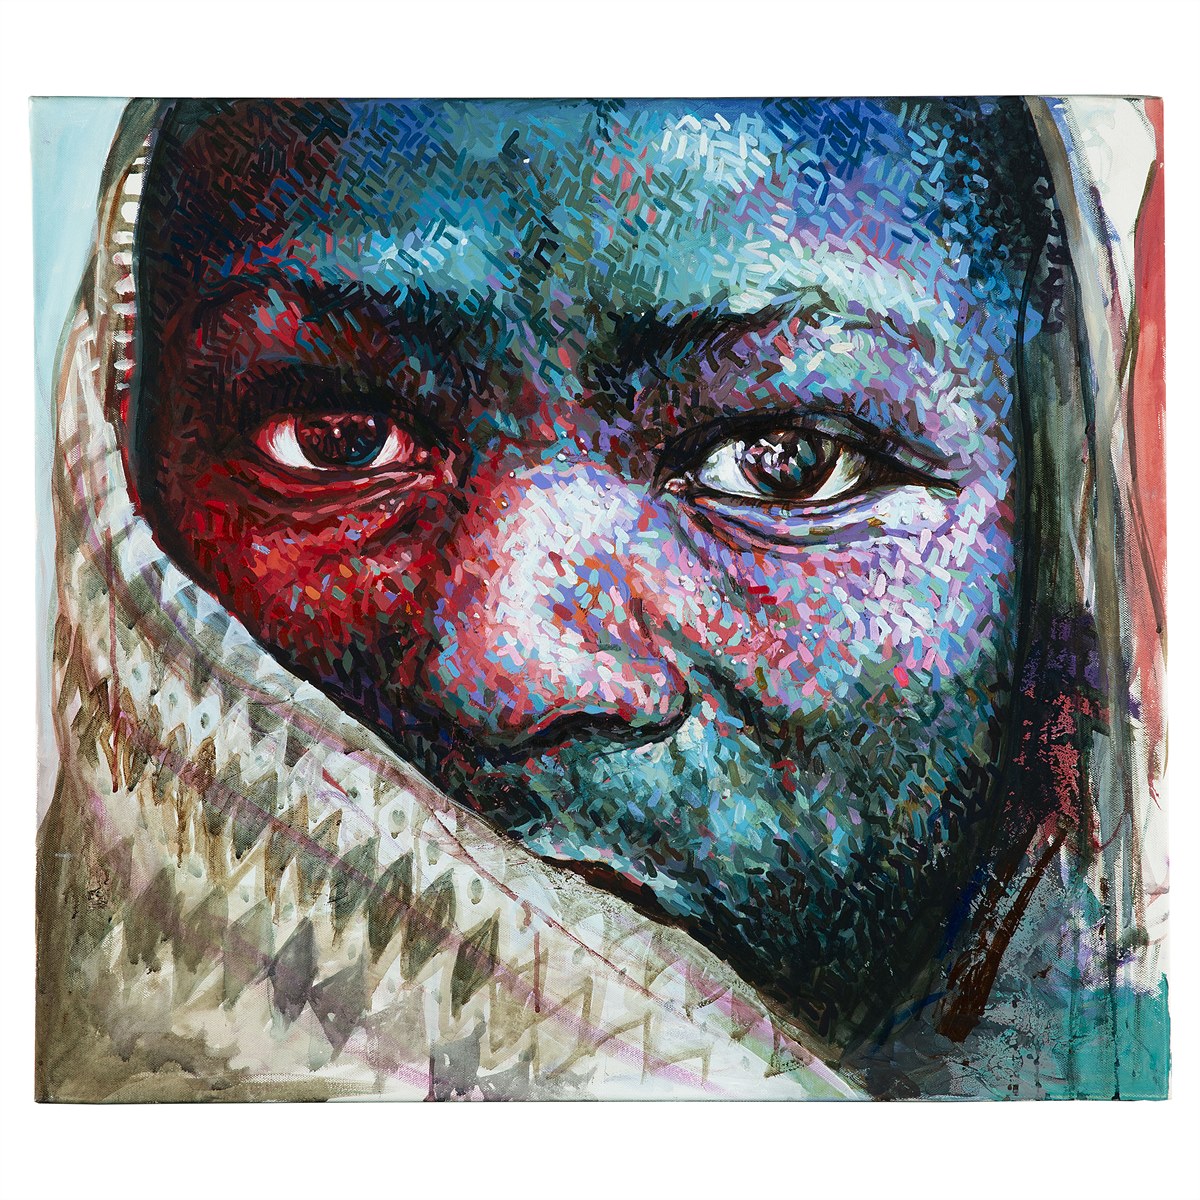 Akademie Auktion 2023: Amoako Boafo, Amina, 2014, Acryl auf Leinwand, 70 x 80 cm, Ausrufpreis: € 25.000